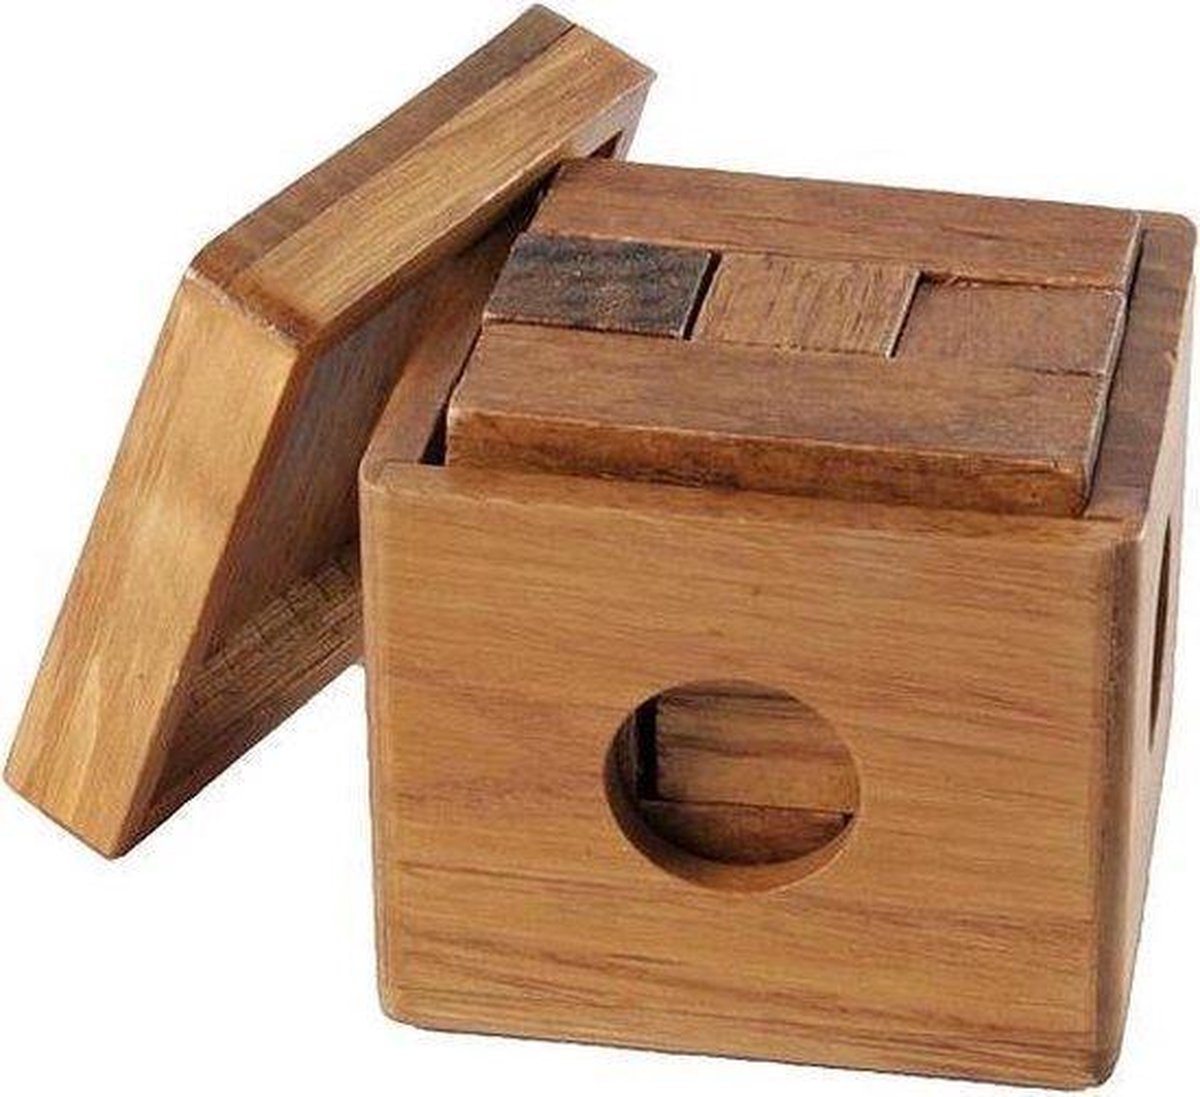 Relaxdays Jeu de casse-tête, en bois, 3 puzzles, avec boîte